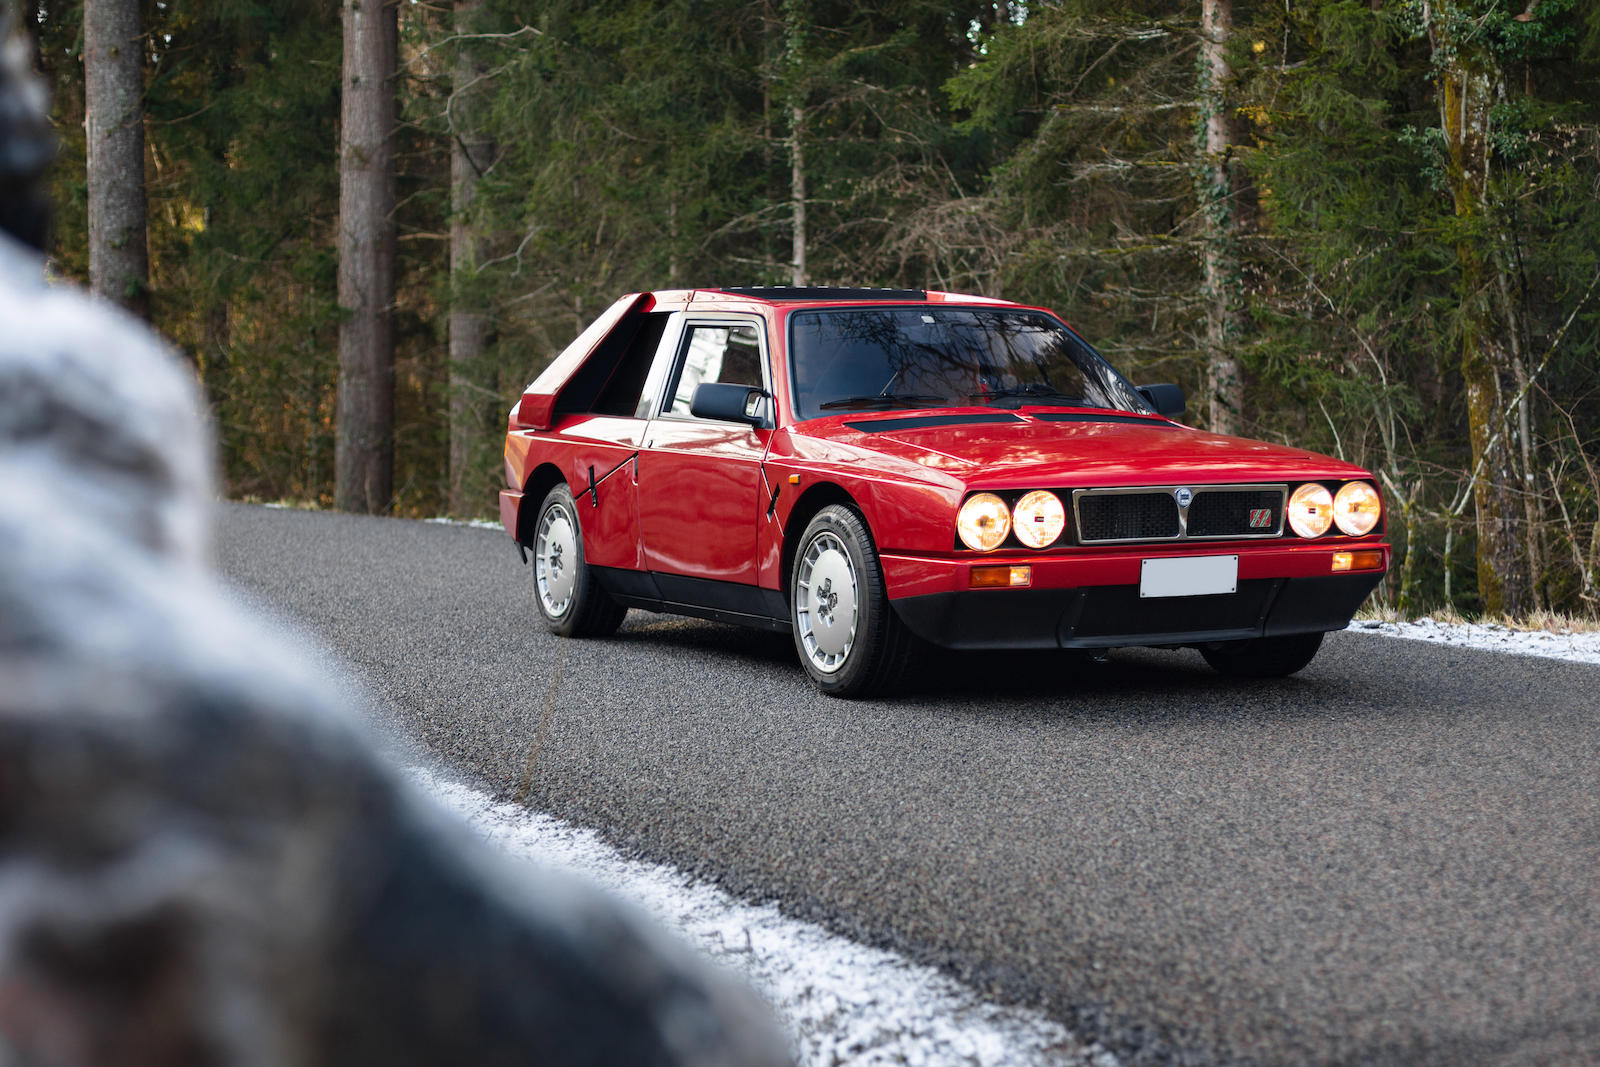 Na sprzedaż trafia Lancia Delta S4 Stradale. Cena? Nawet 2